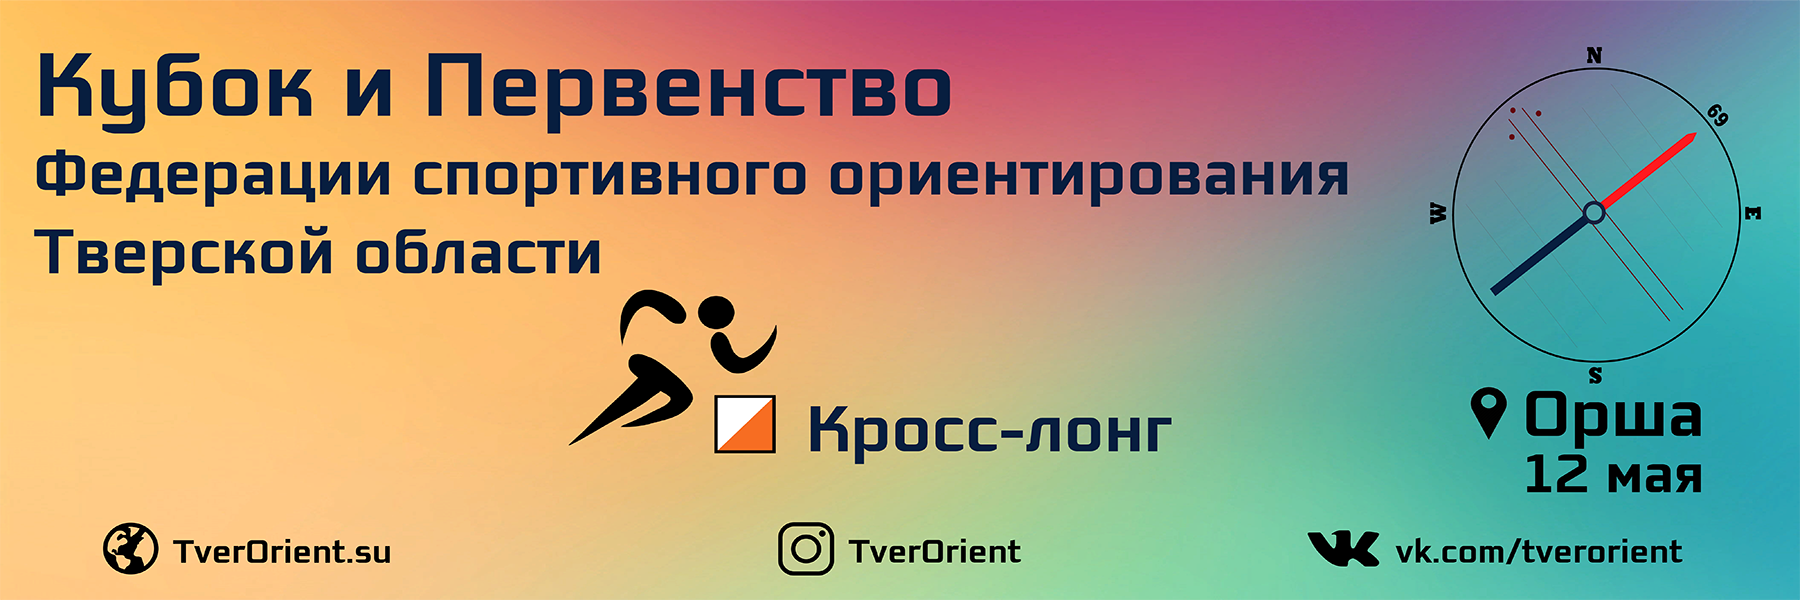 2019-05-12-logo.png